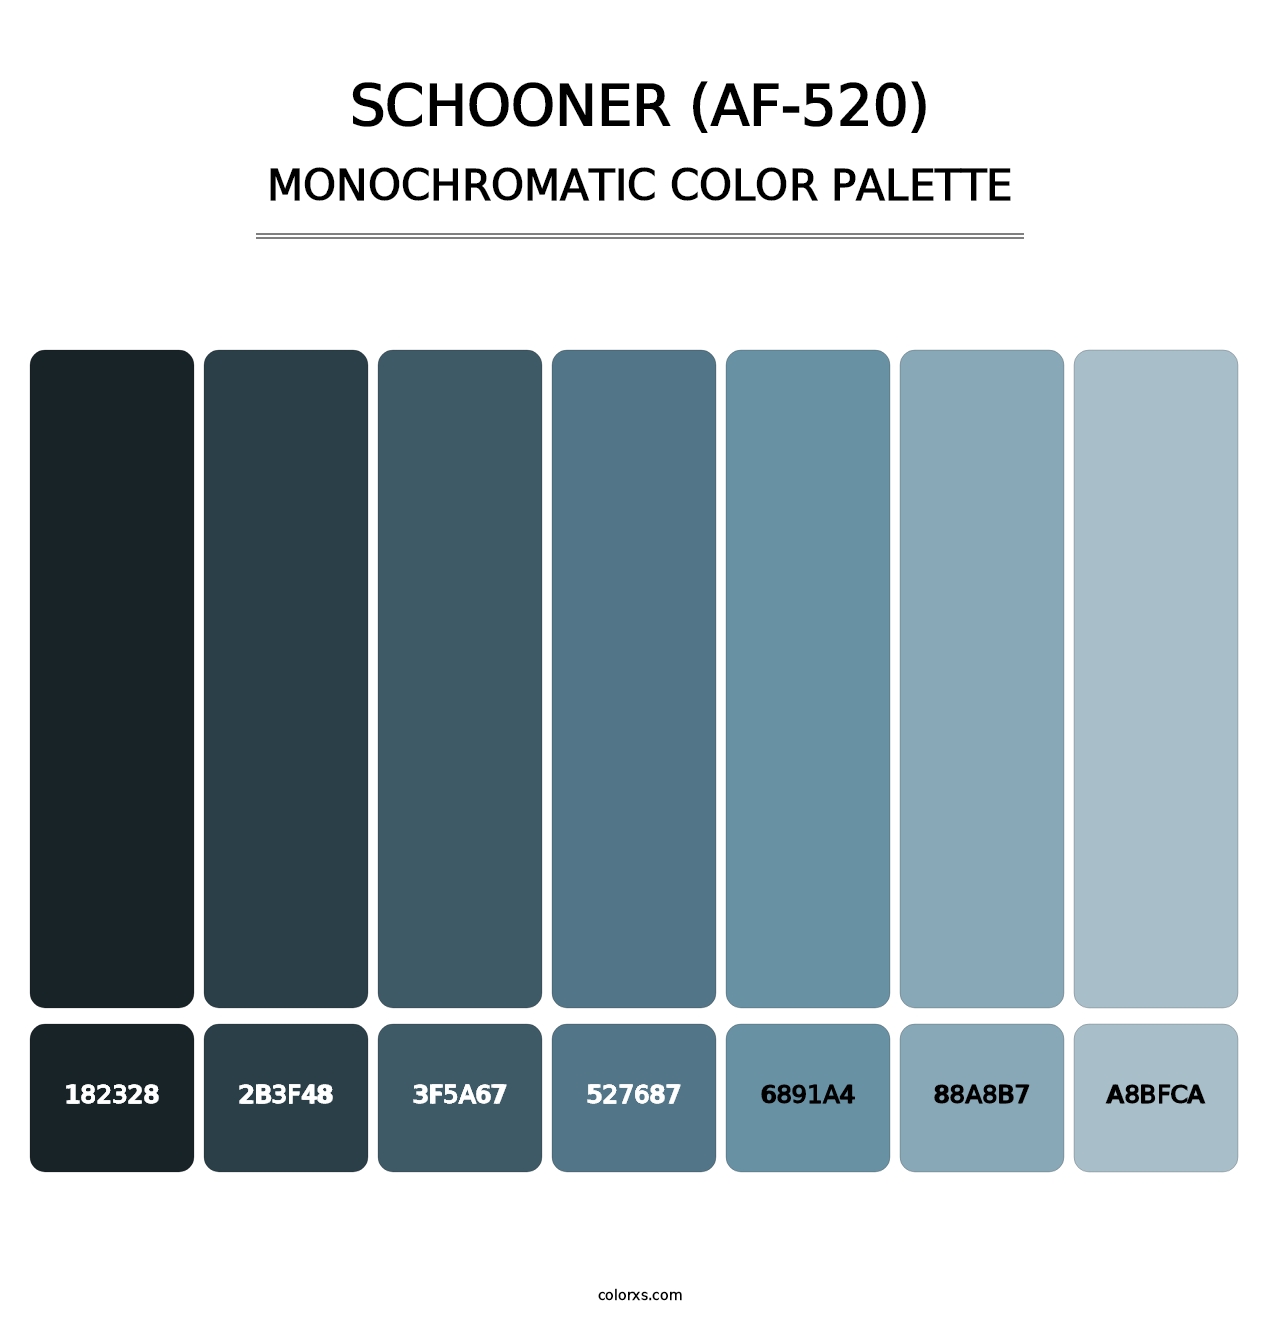 Schooner (AF-520) - Monochromatic Color Palette